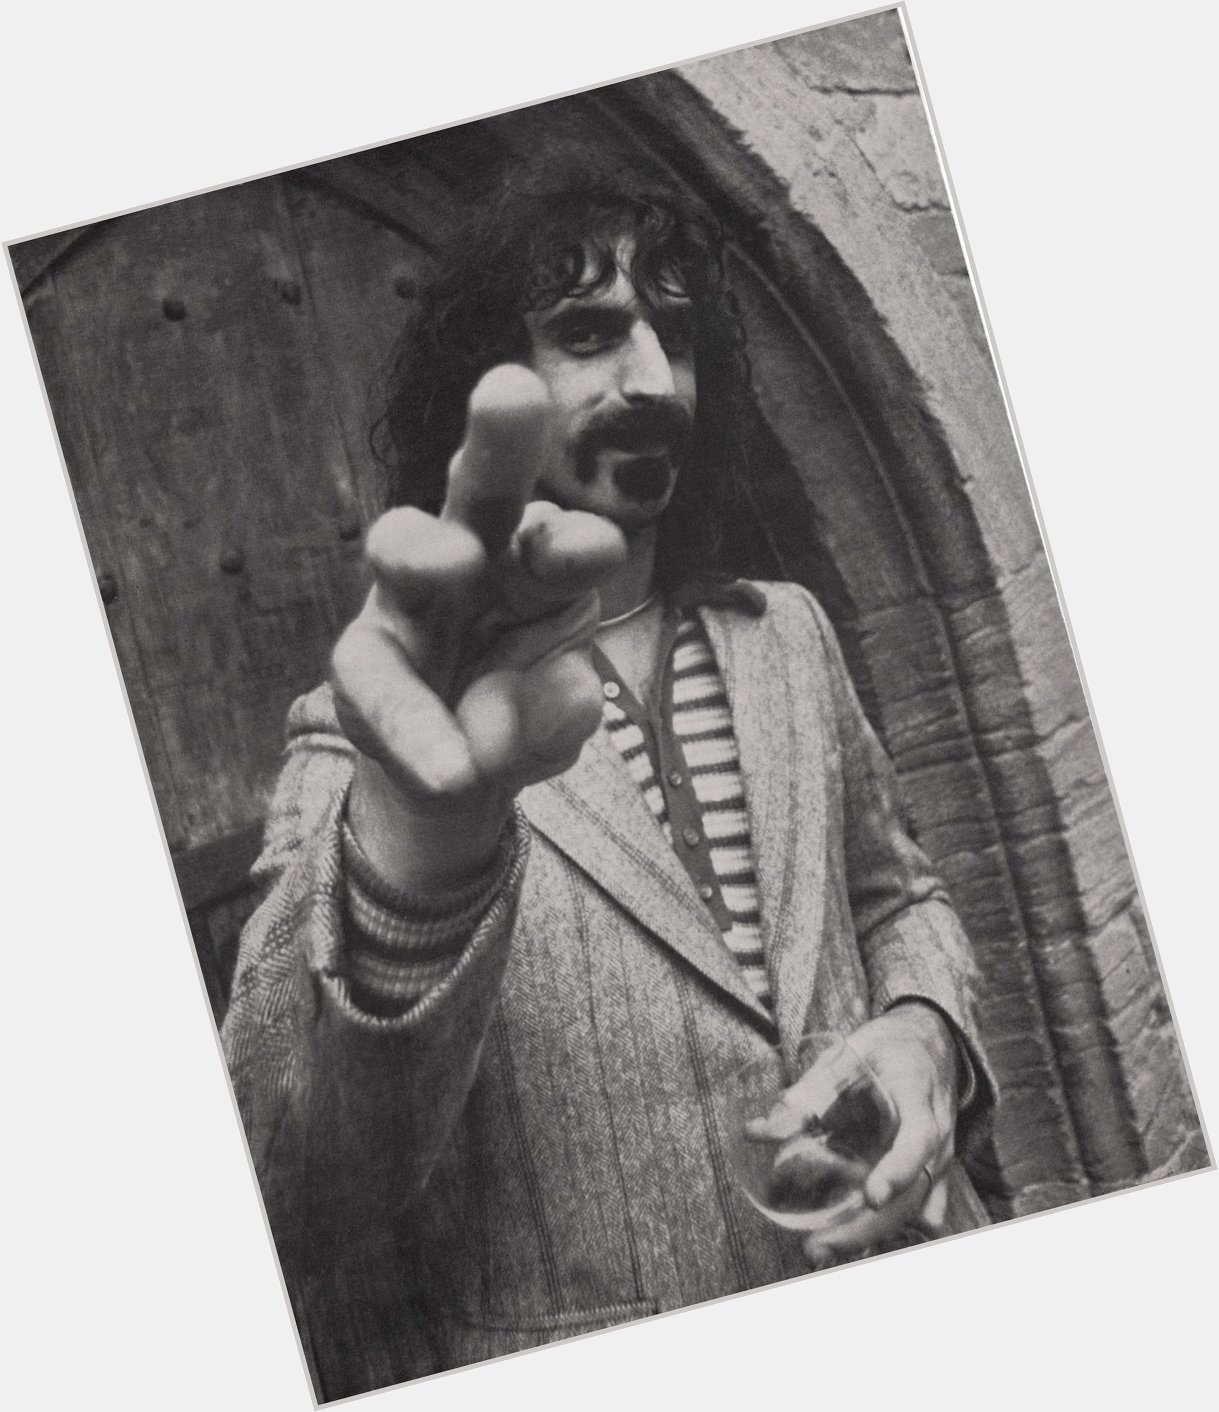  Happy Birthday Frank Zappa! 